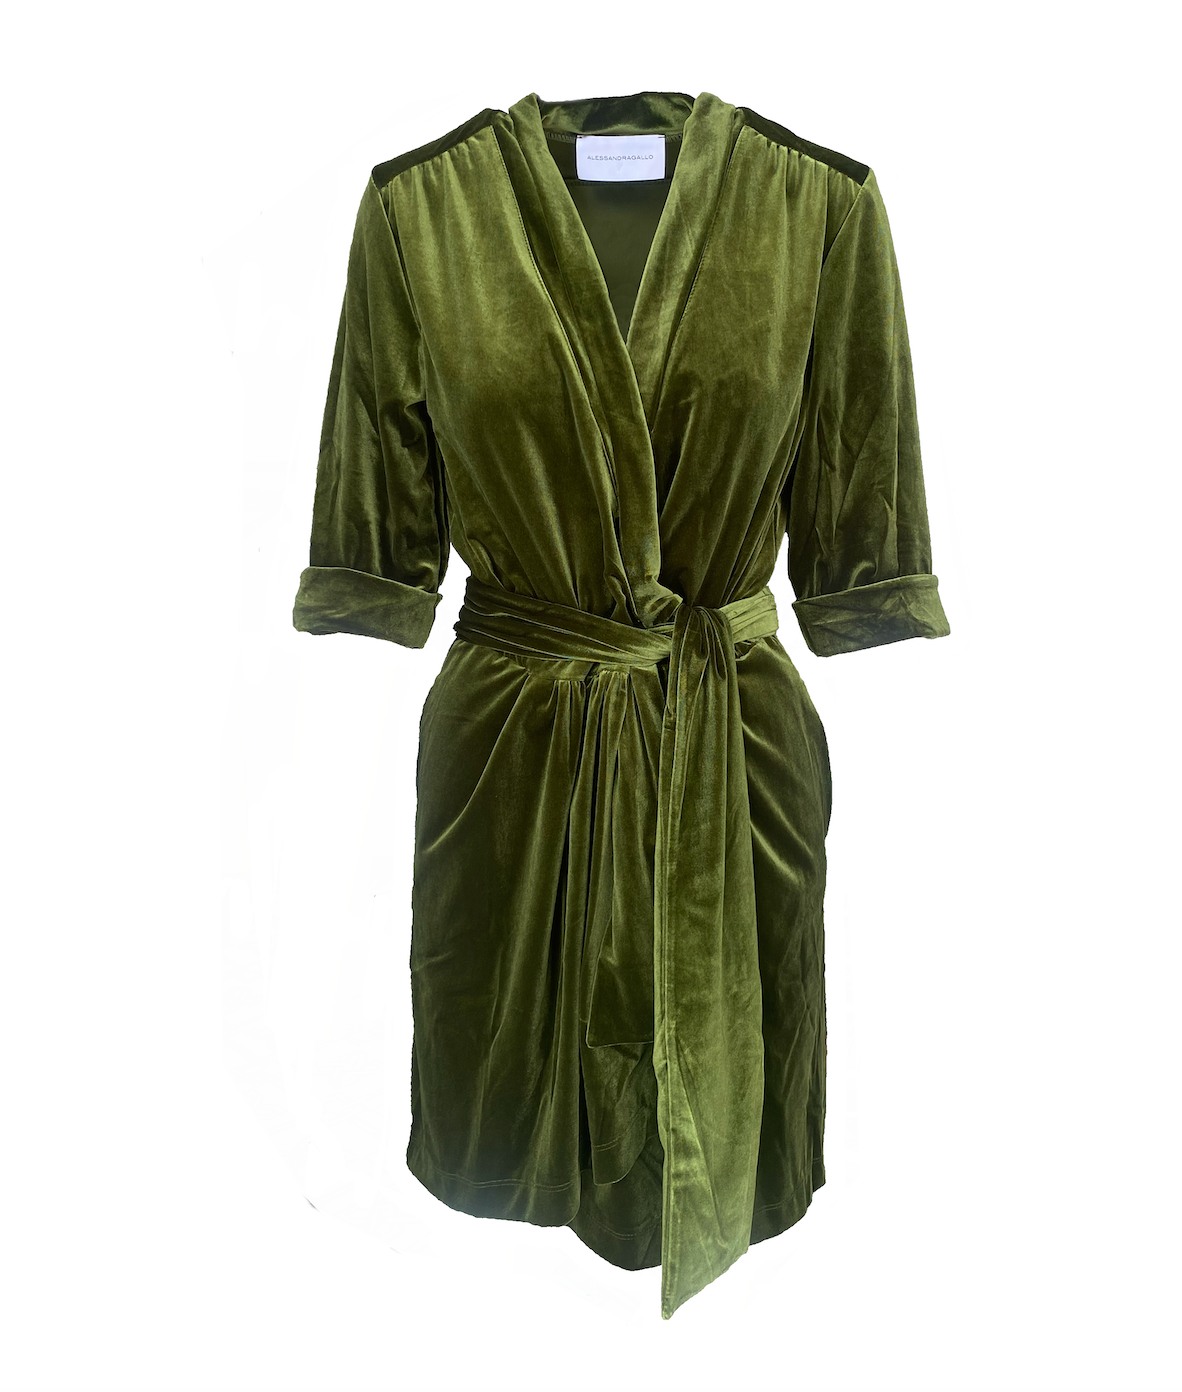 GINEVRA MINI - short green chenille dress